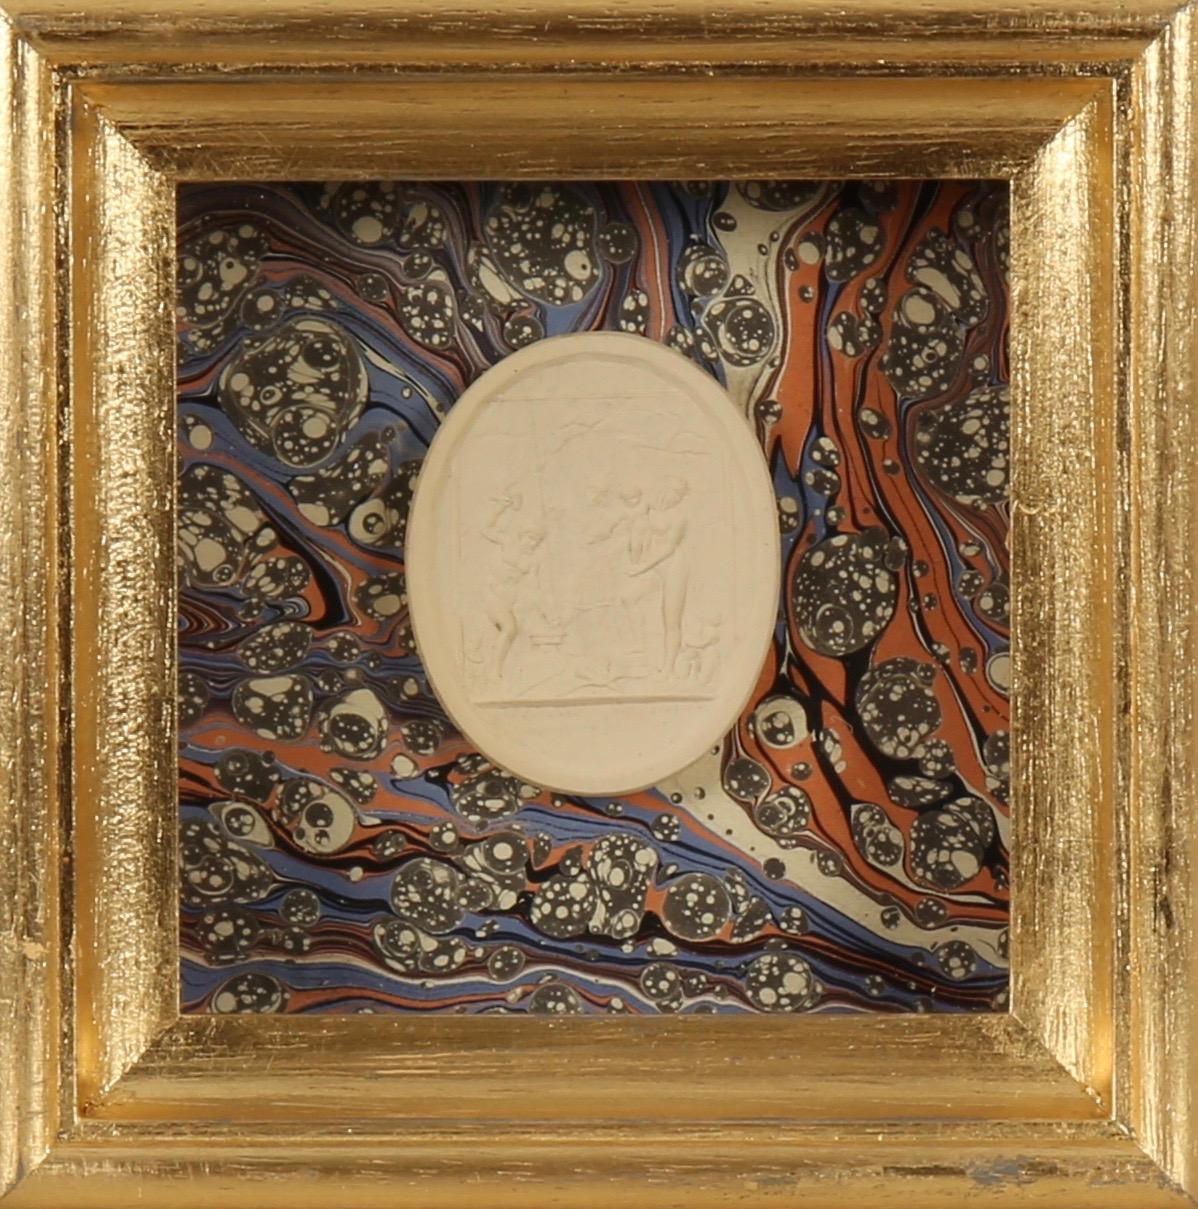 Paoletti Impronte, ‘Mussei Diversi’, Rome c1800. Grand Tour intaglio seal. - Print by  Bartolomeo Paoletti